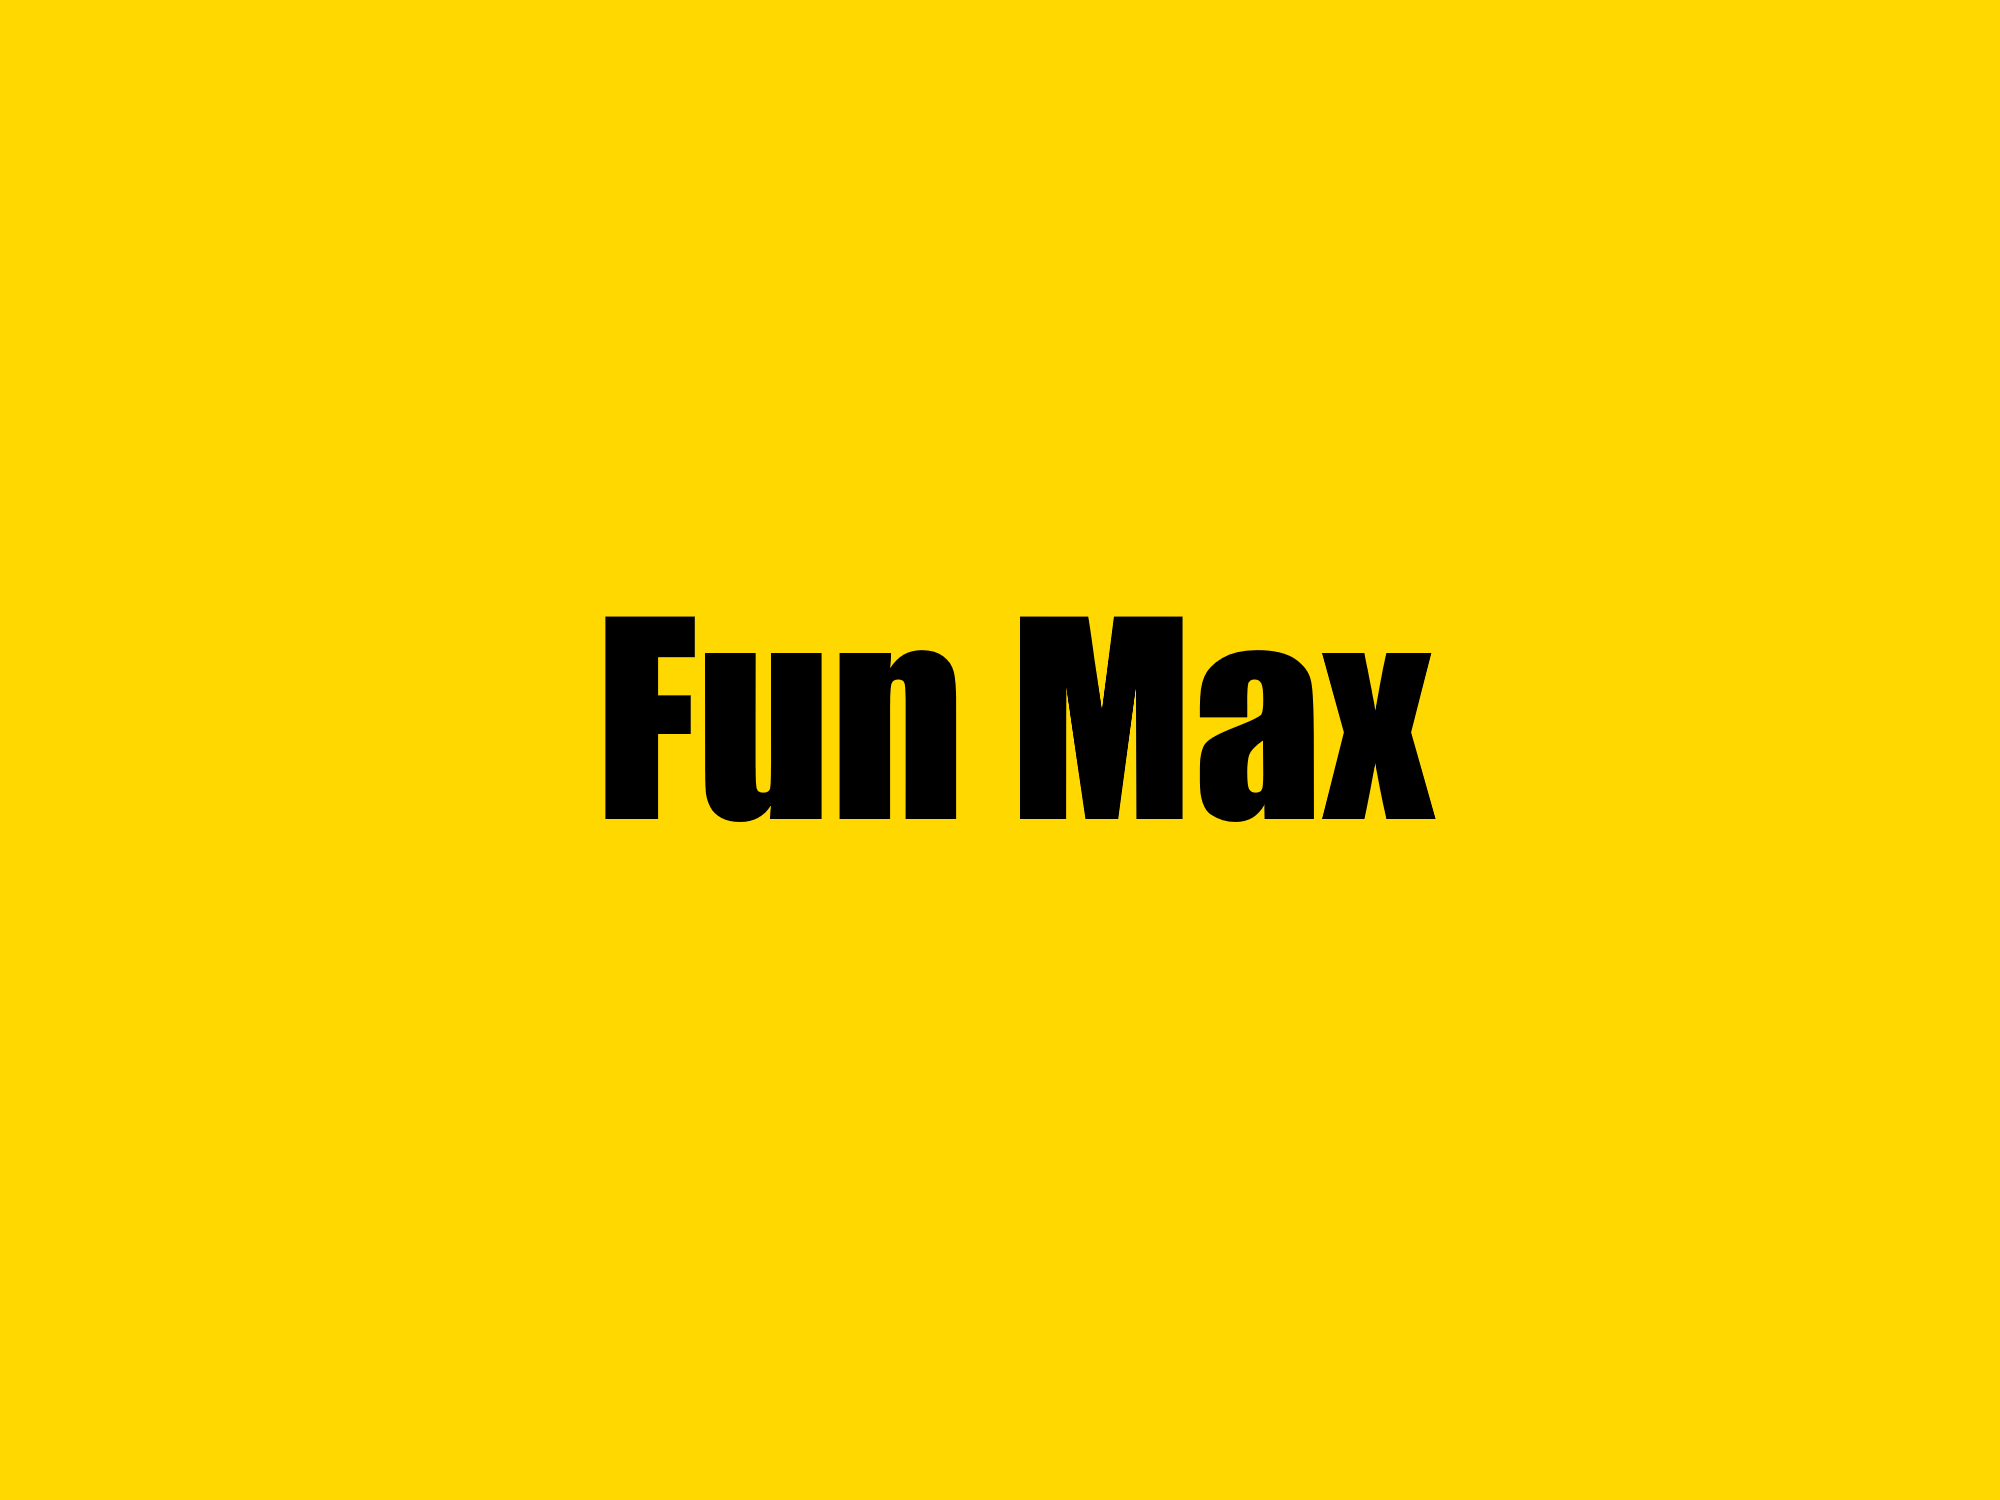 Fun Max